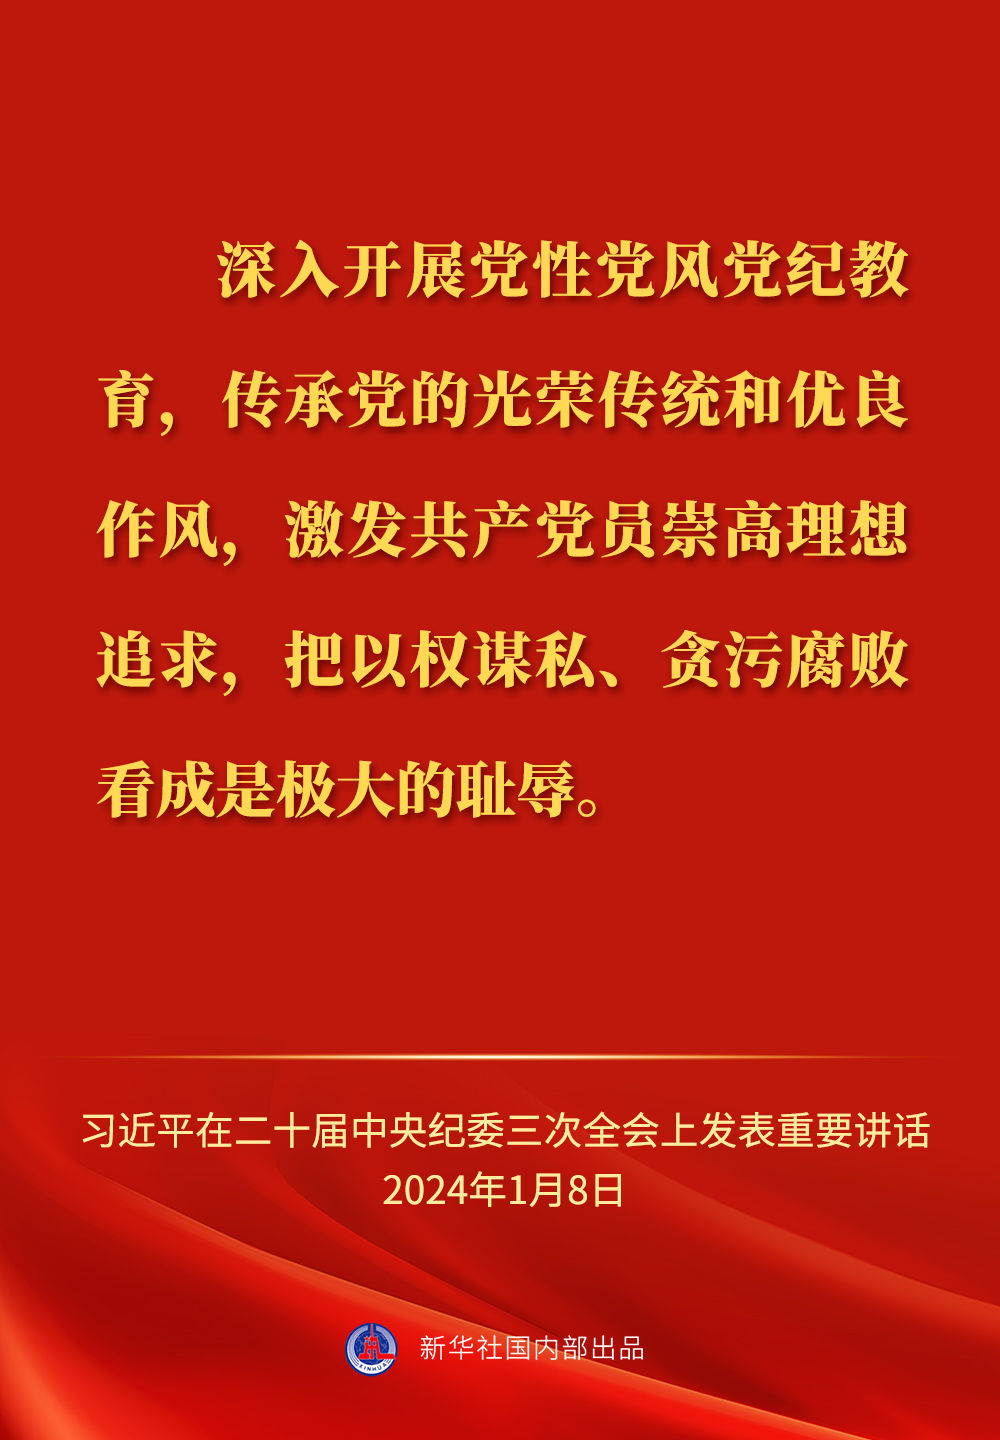 习近平总书记在二十届中央纪委三次全会上的重要讲话金句